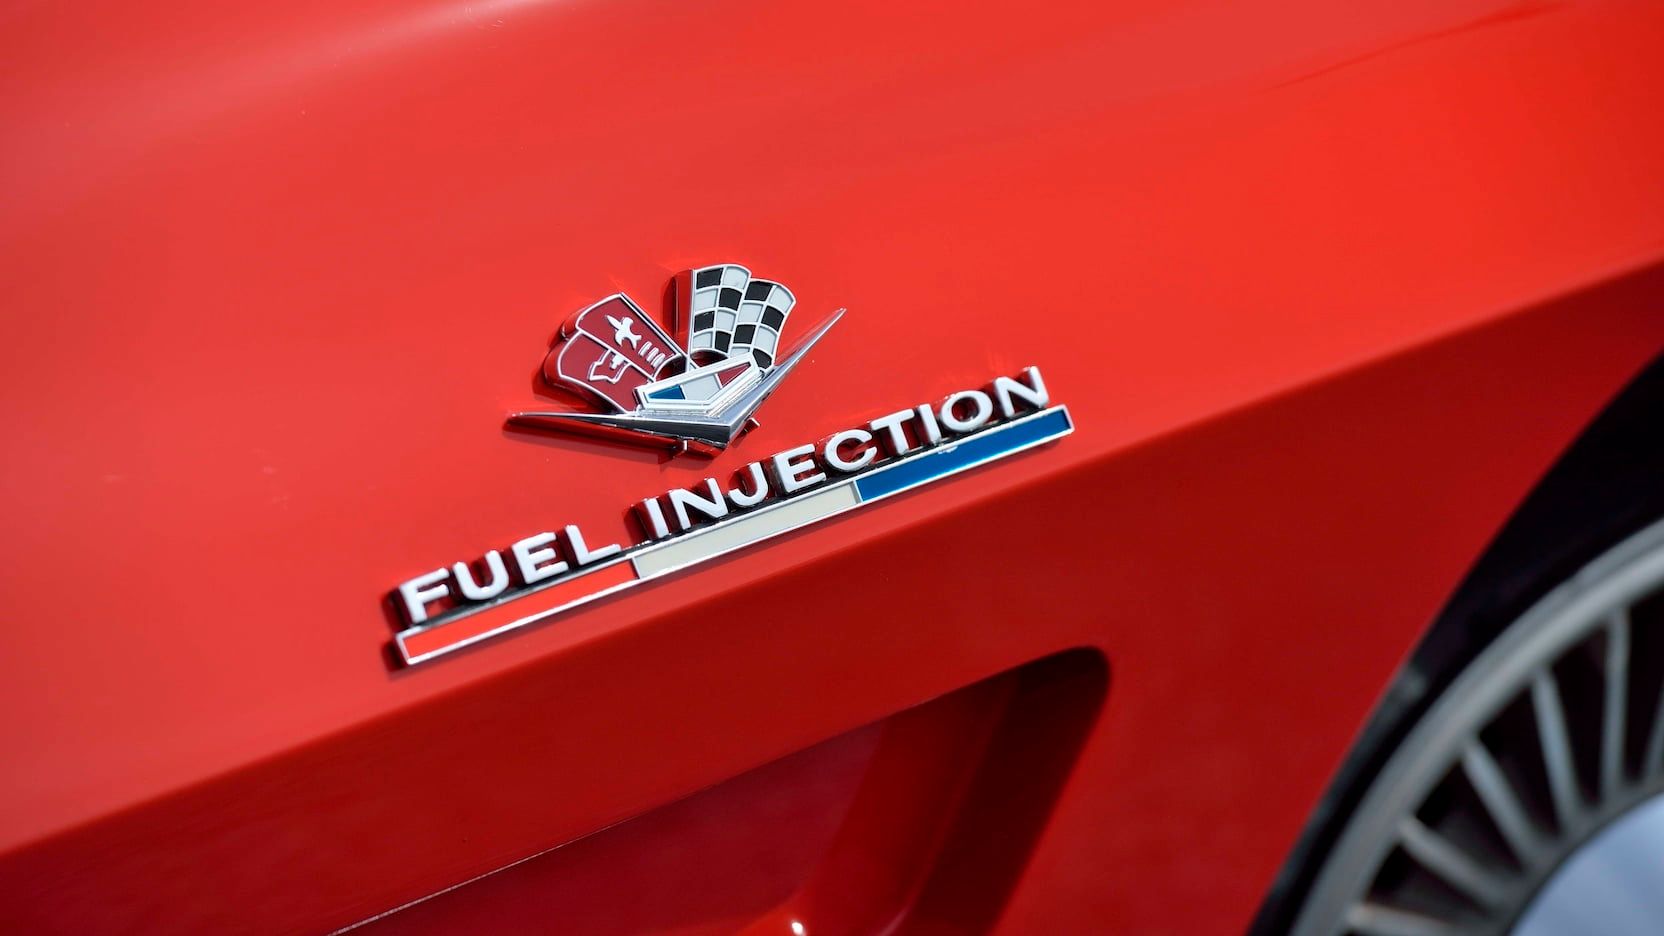 Corvette fuel injection logo